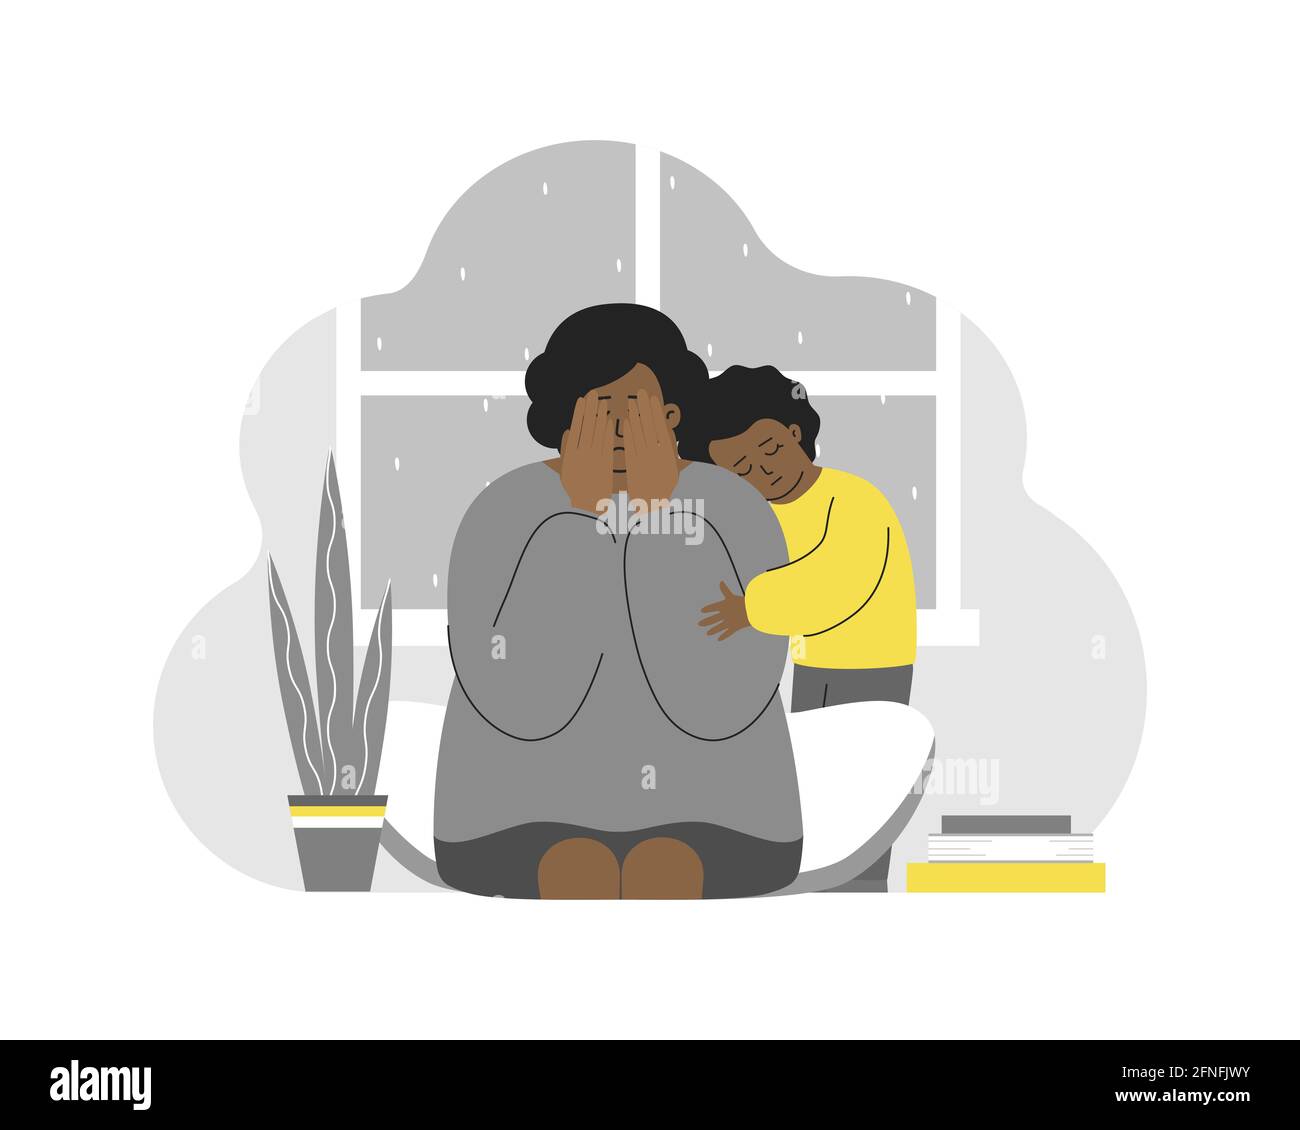 Ilustración vectorial con mujer llorando cansada. Una niña afroamericana abraza a mamá. Depresión posparto, agotamiento emocional, estrés. La hija siente por la polilla Ilustración del Vector